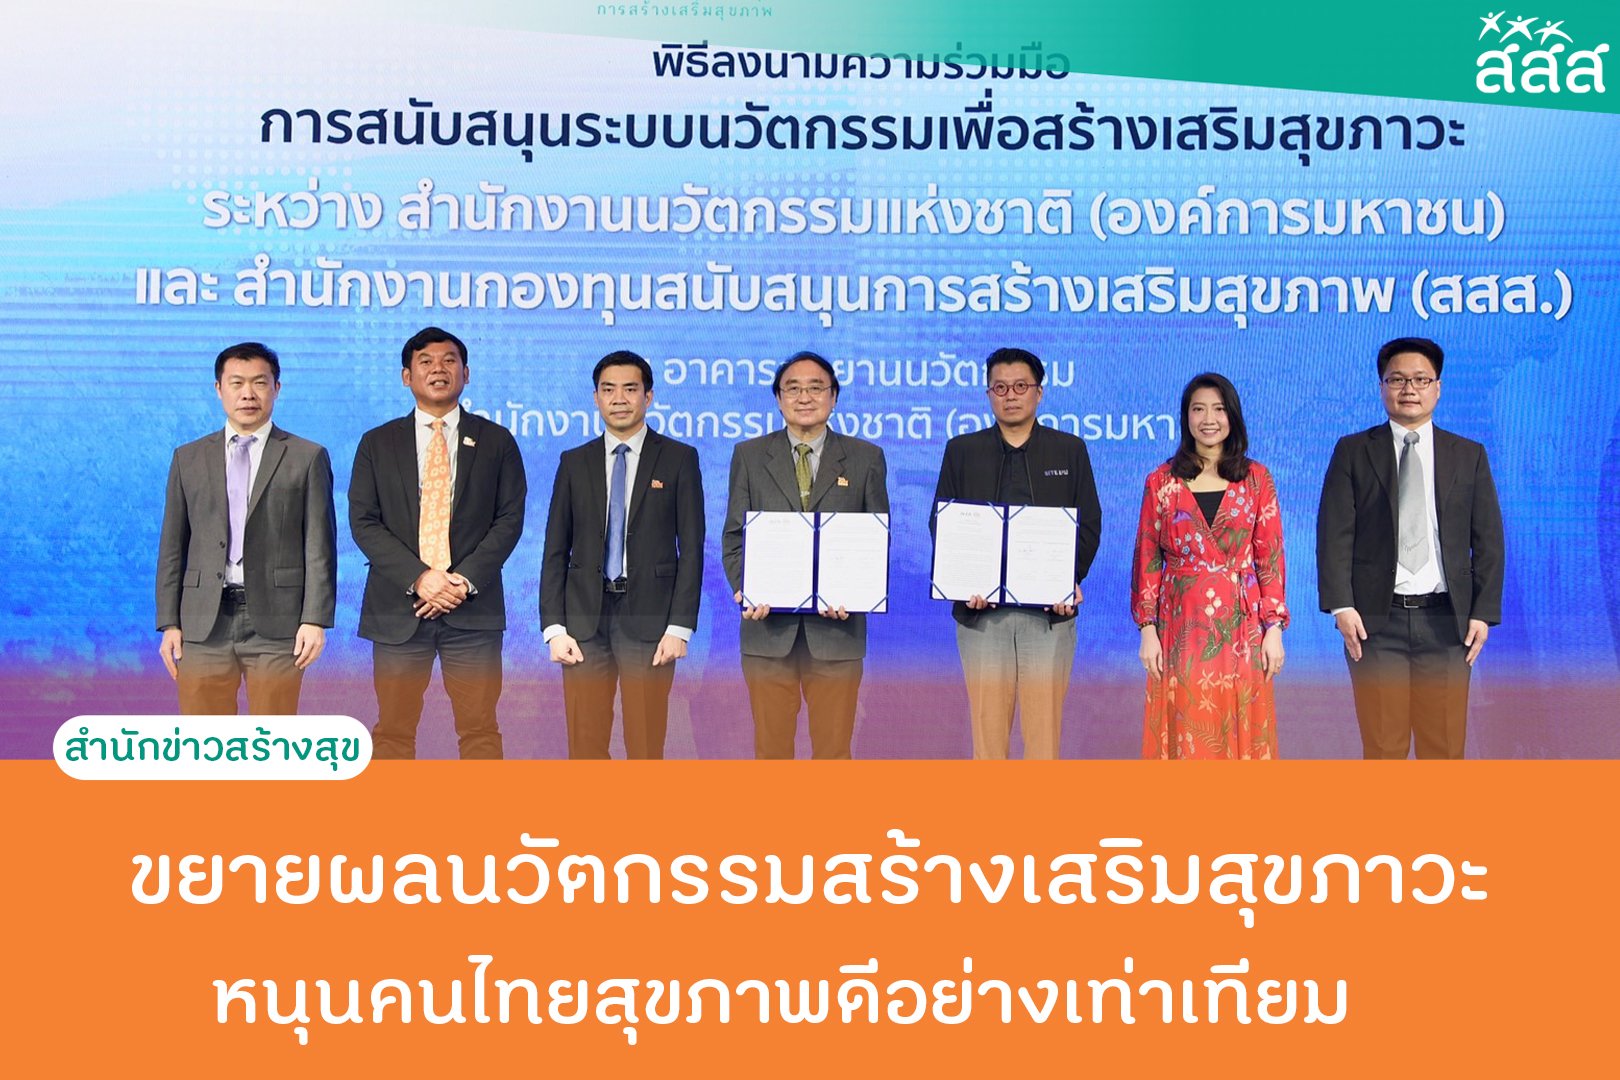 ขยายผลนวัตกรรมสร้างเสริมสุขภาวะ หนุนคนไทยสุขภาพดีอย่างเท่าเทียม thaihealth